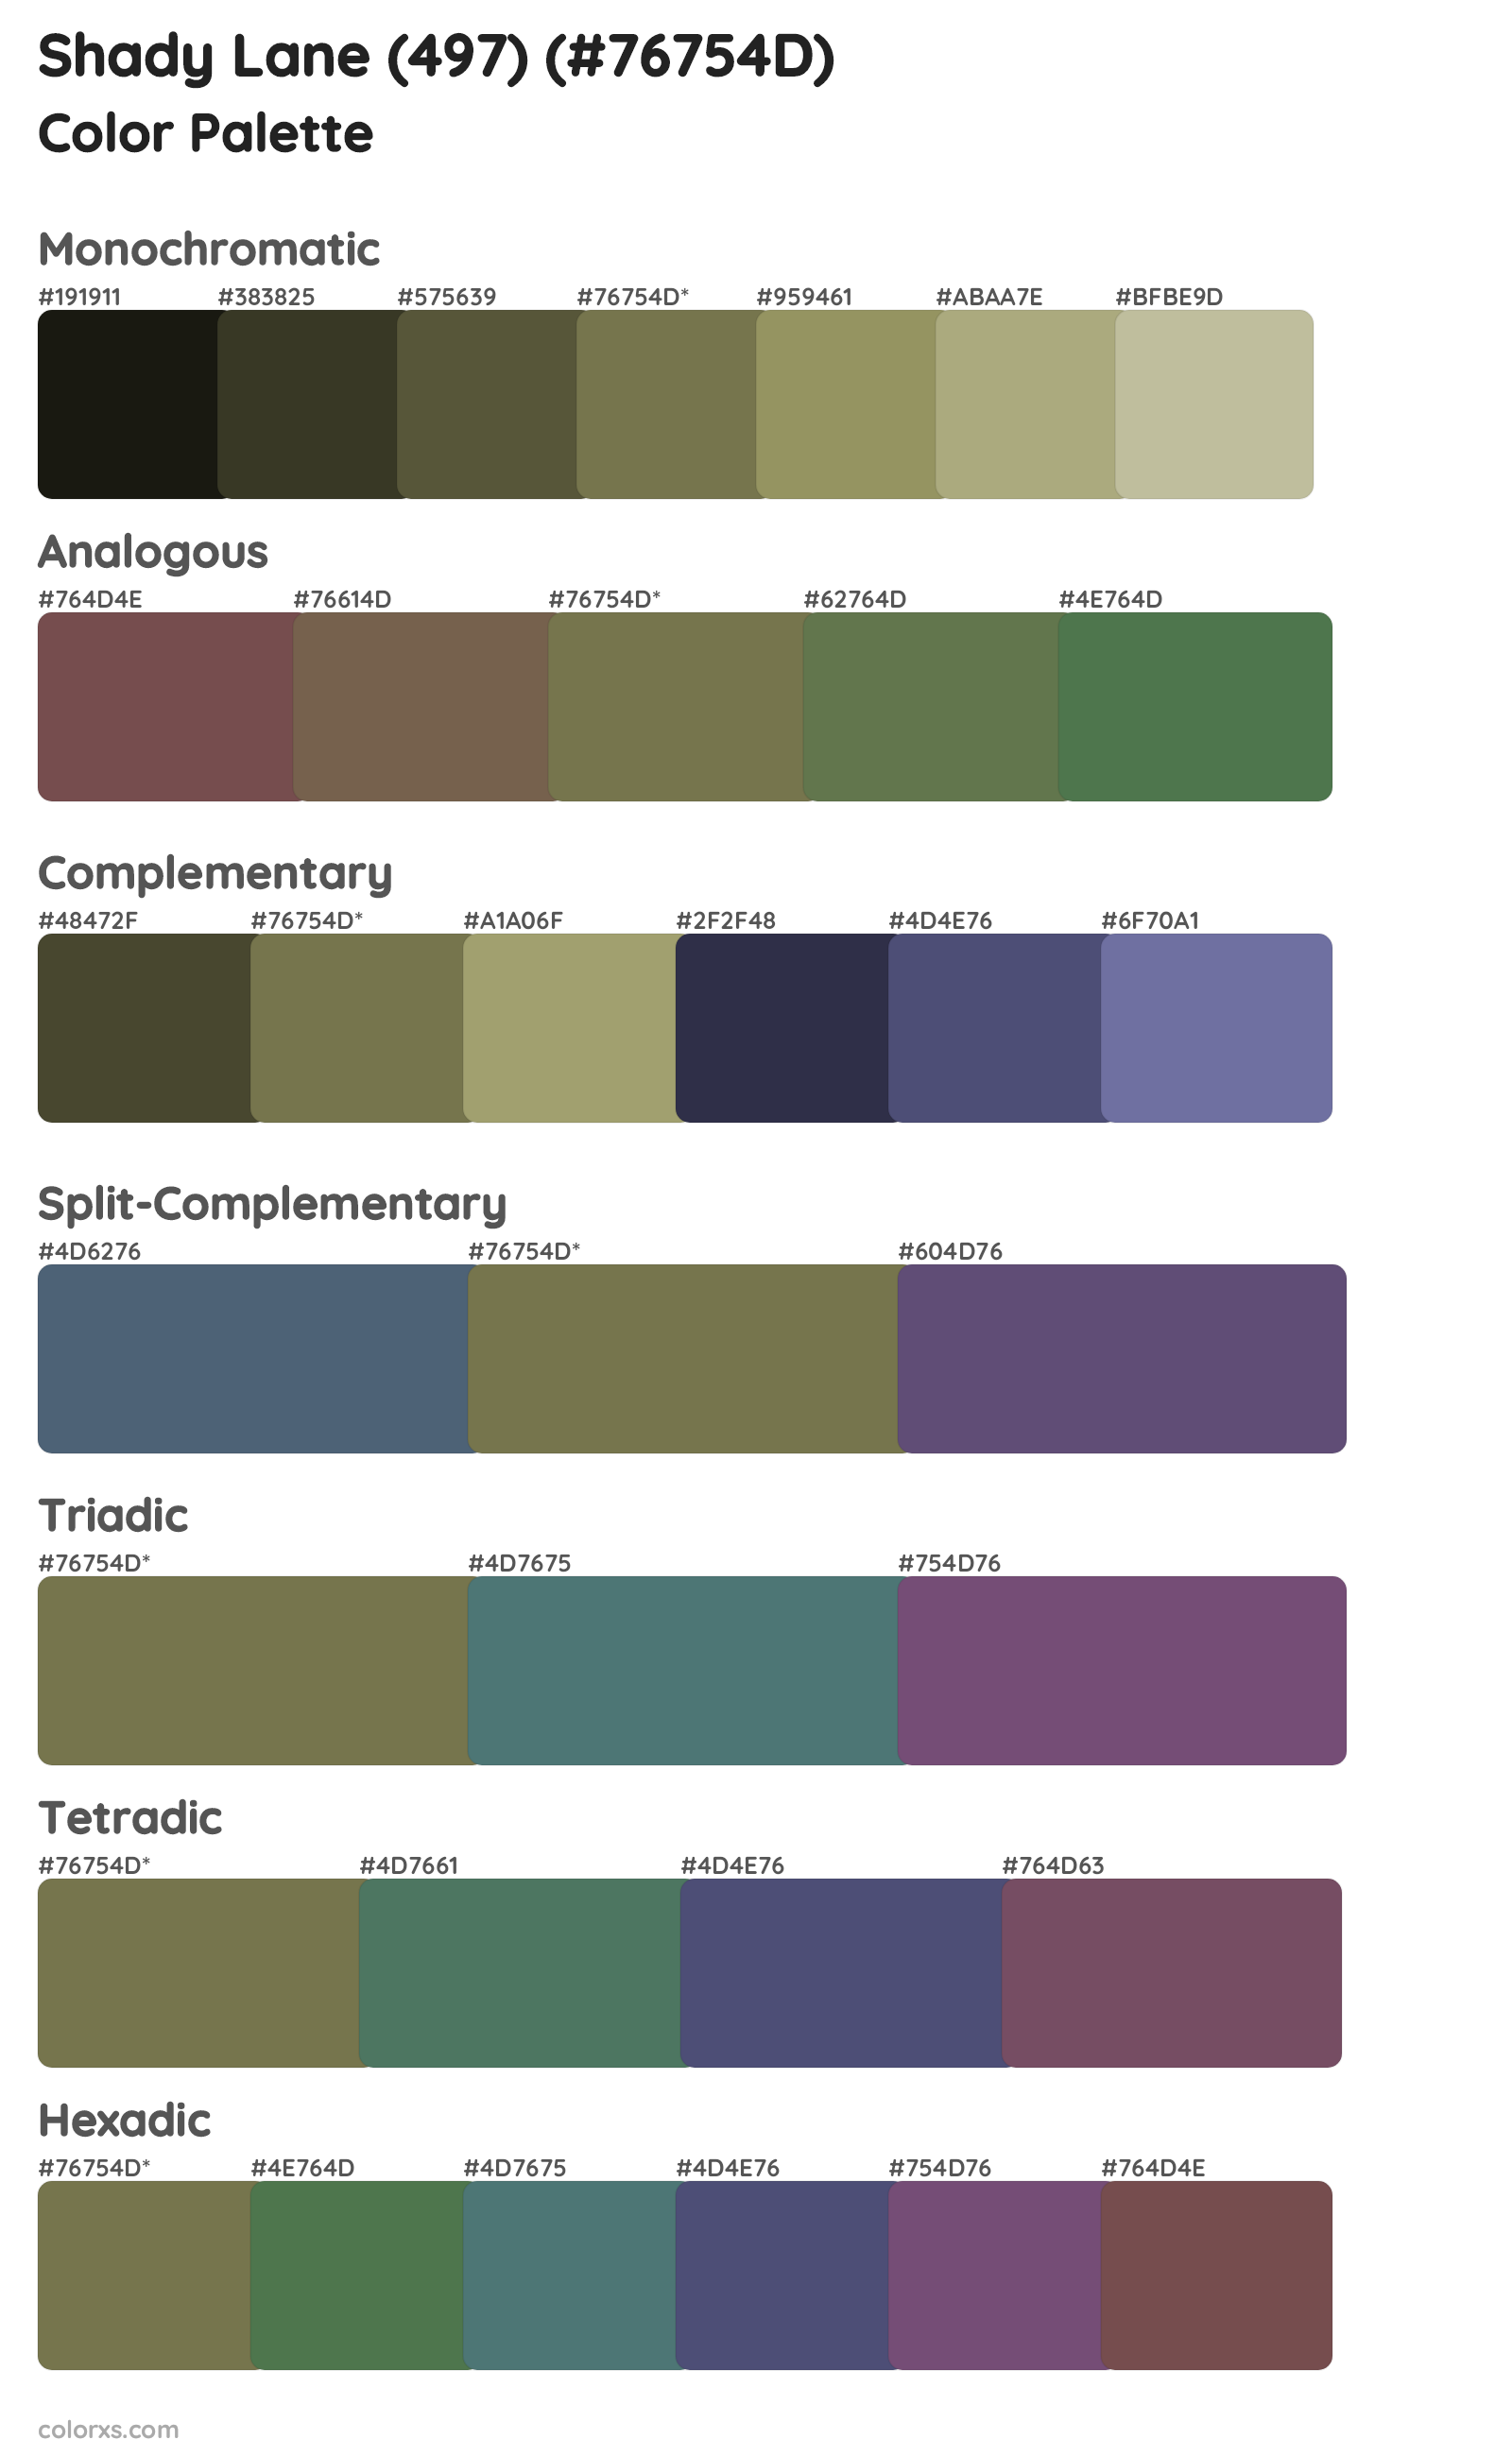 Shady Lane (497) Color Scheme Palettes